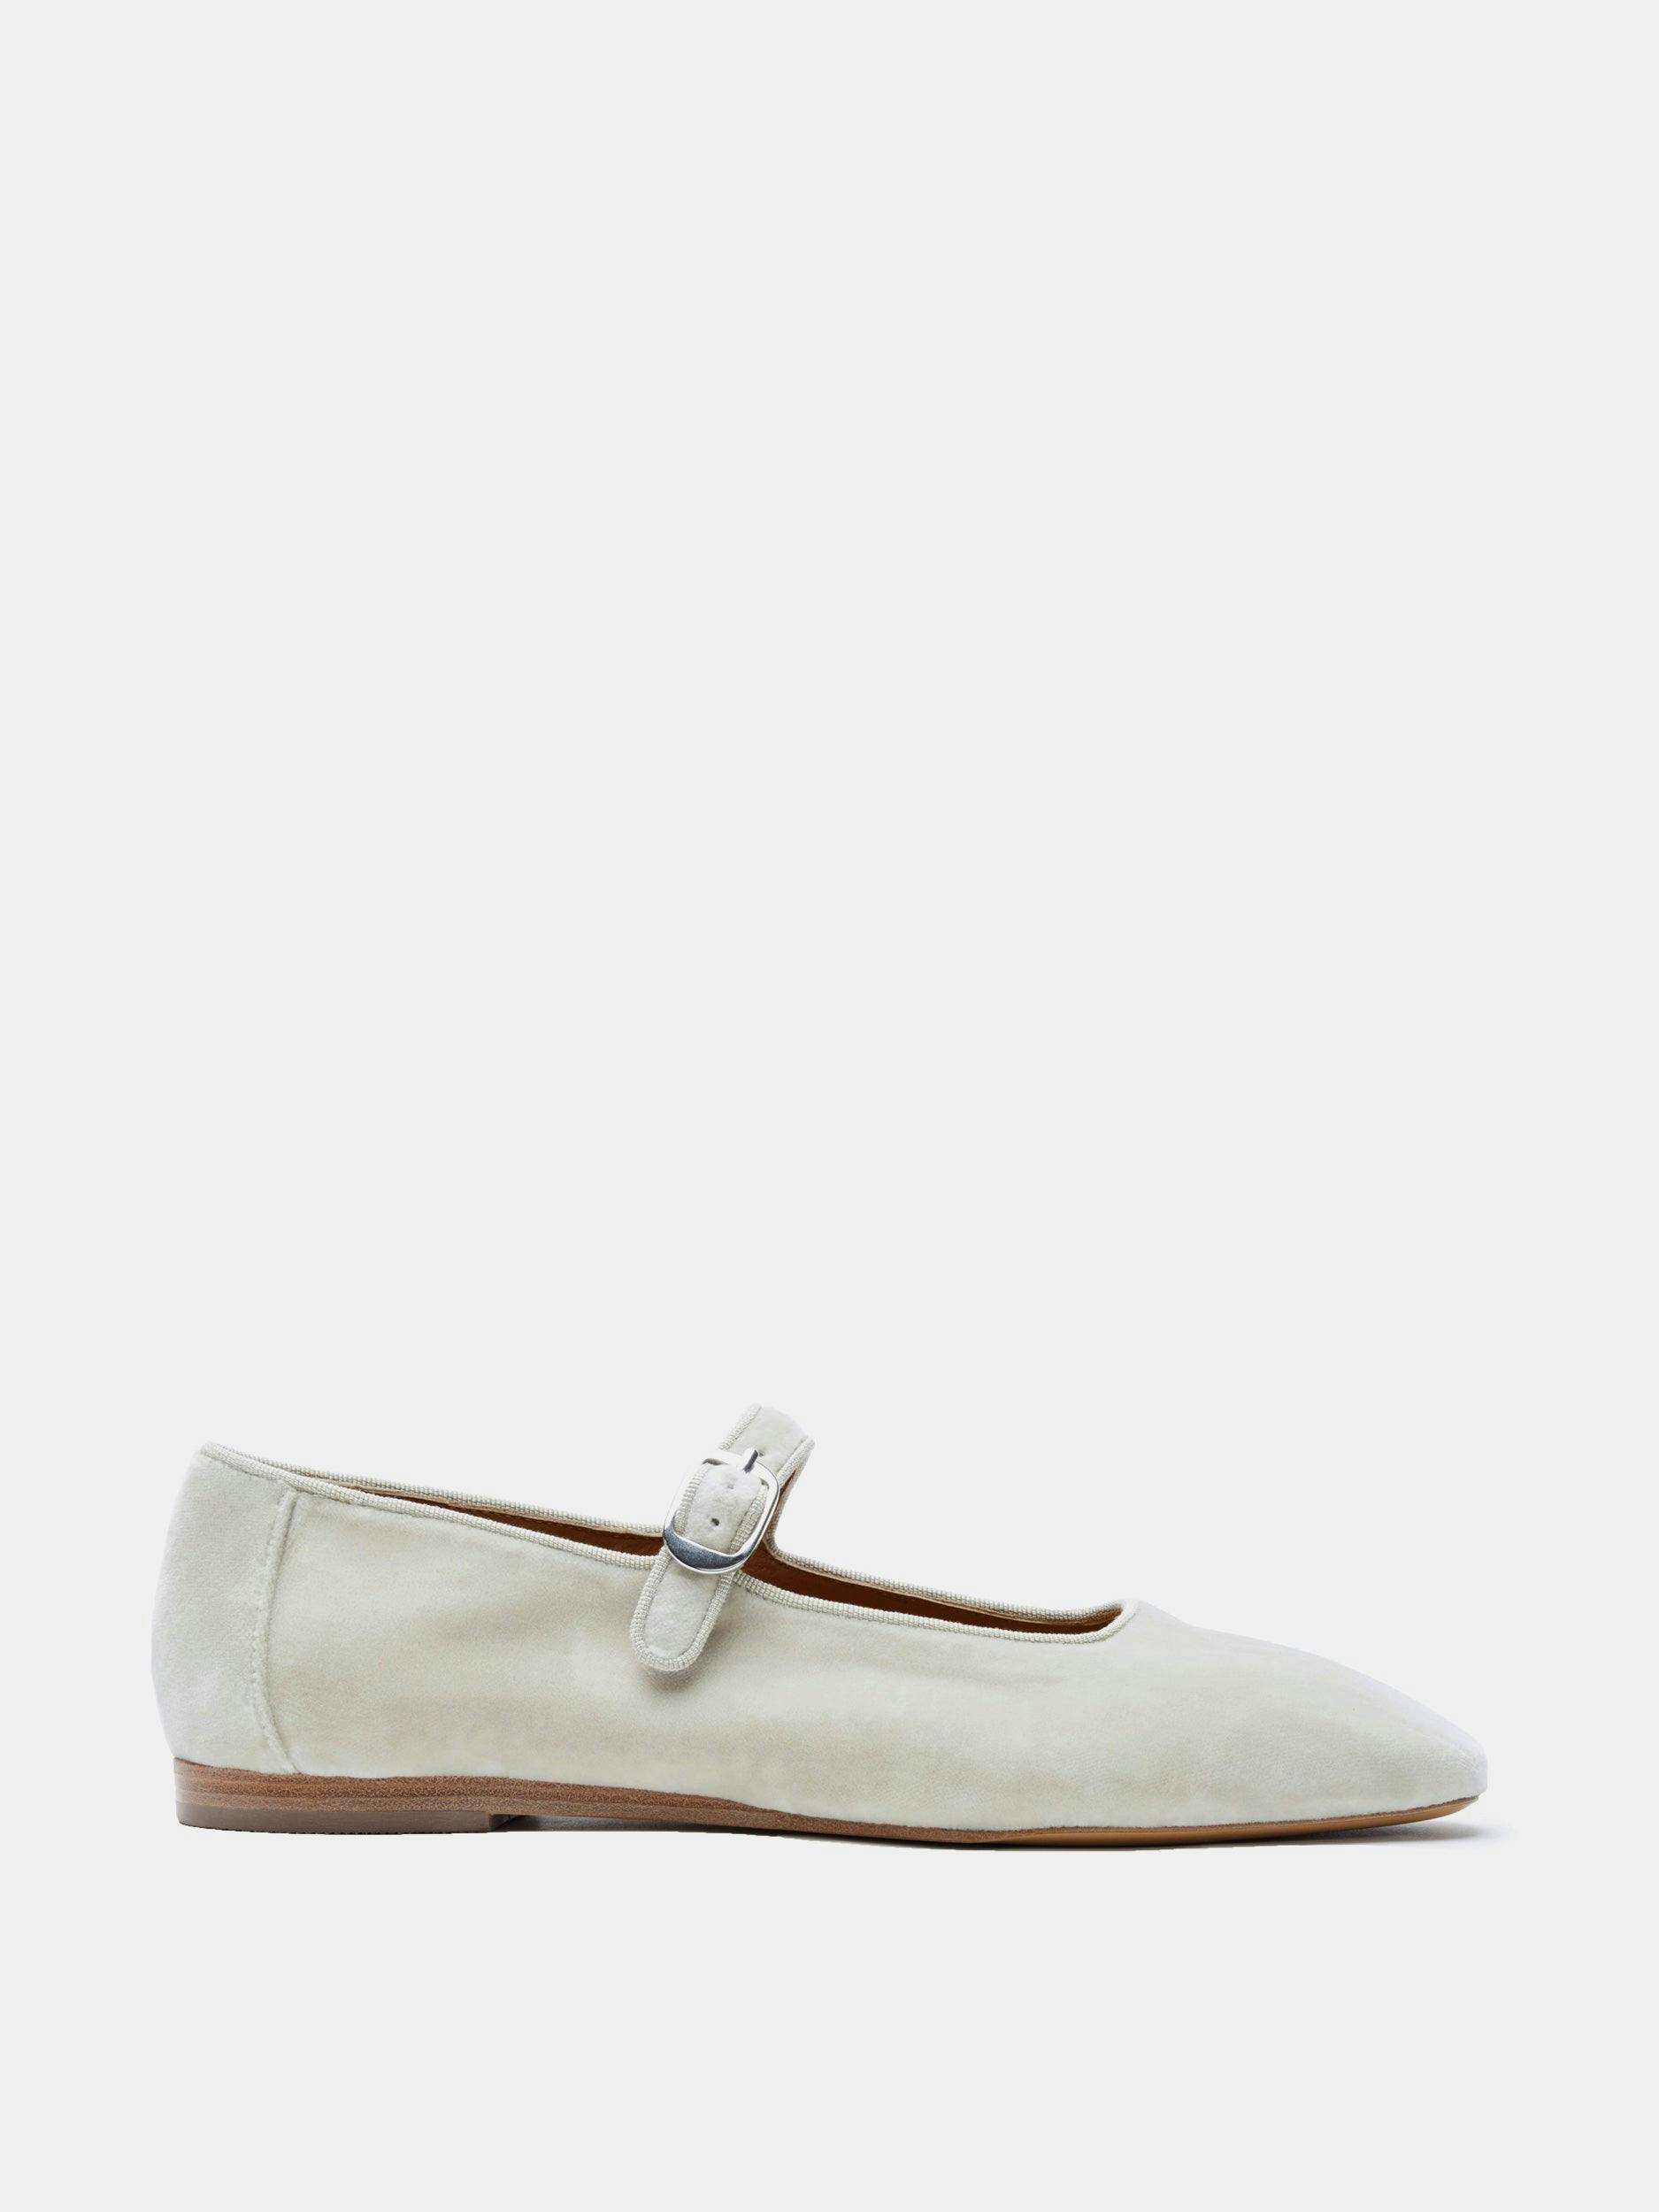 Light grey velvet Mary Jane shoes